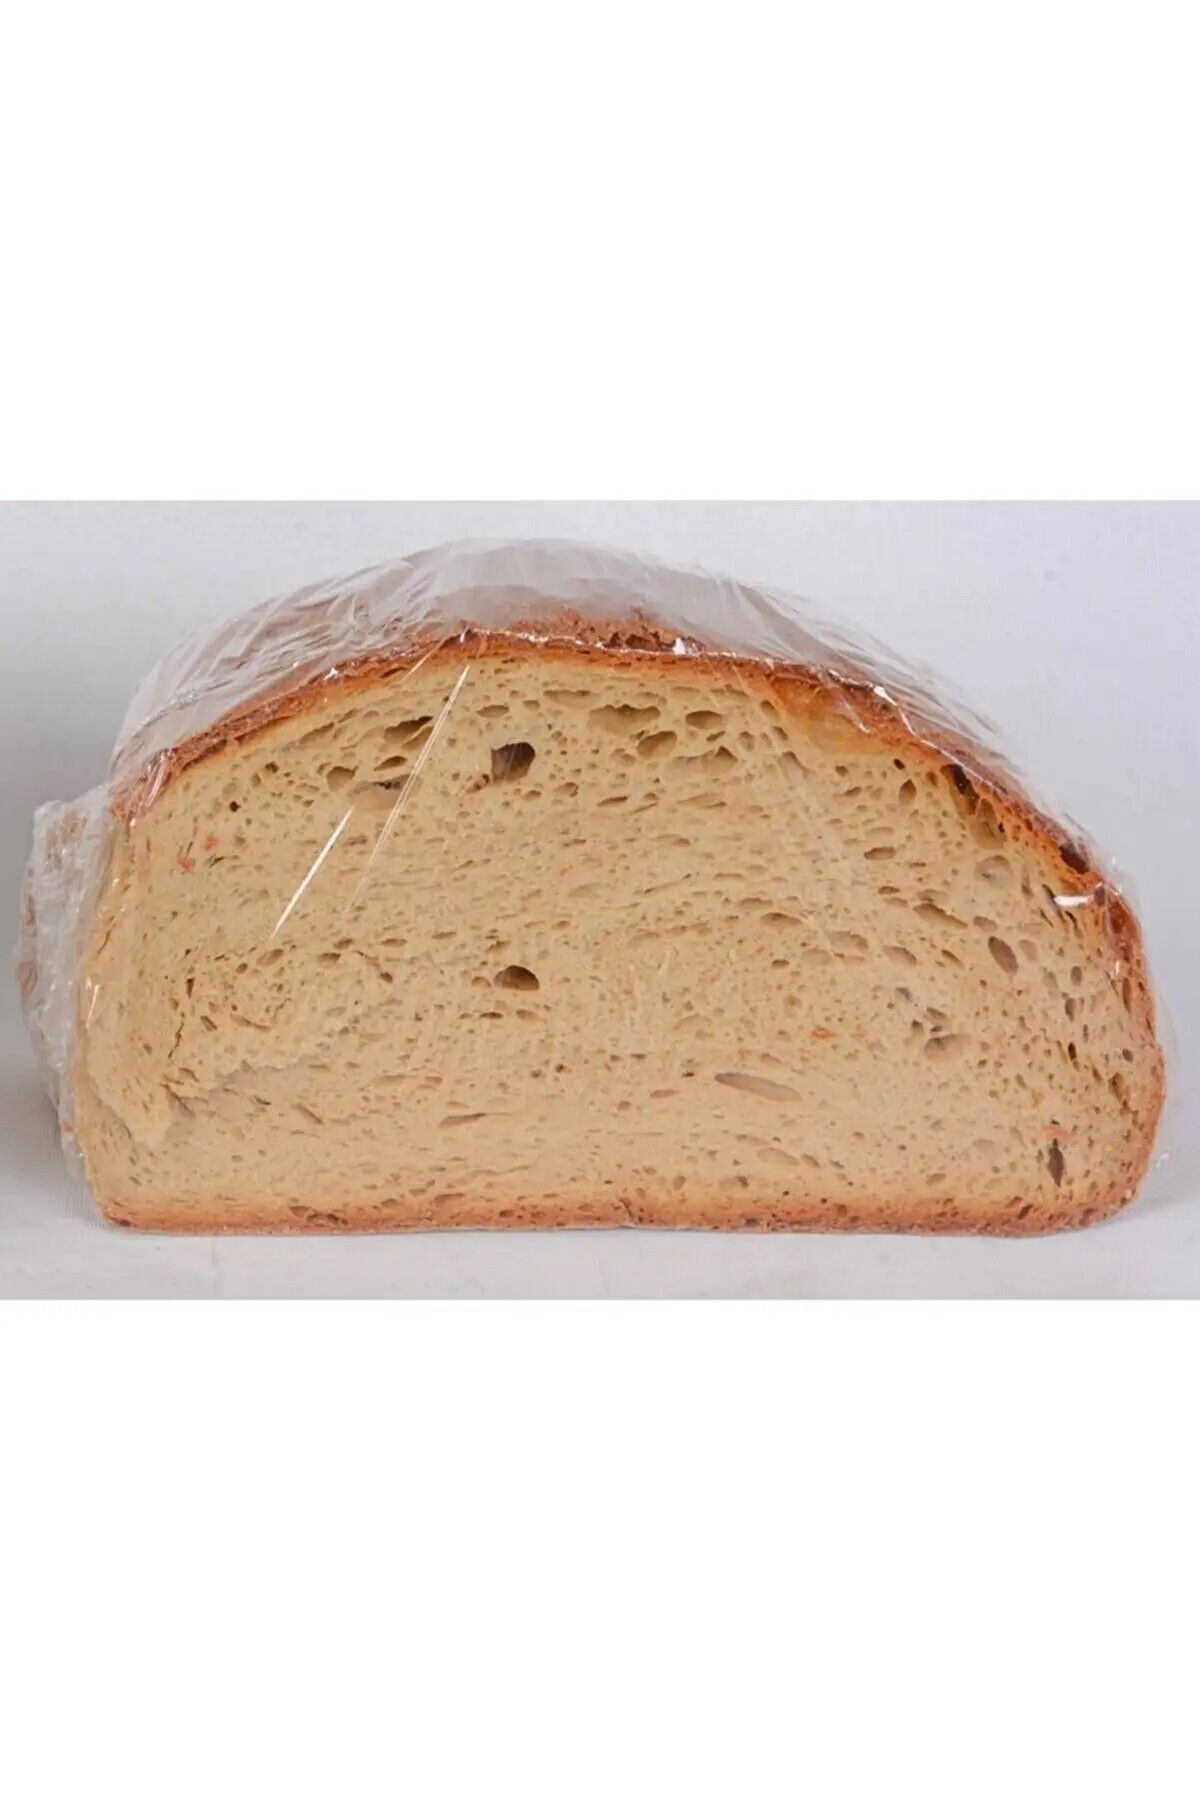 Hanzade Pestil Köme GÜMÜŞHANE Kürtün ekşi mayalı ekmek 3,8 kg- 4,8 kg